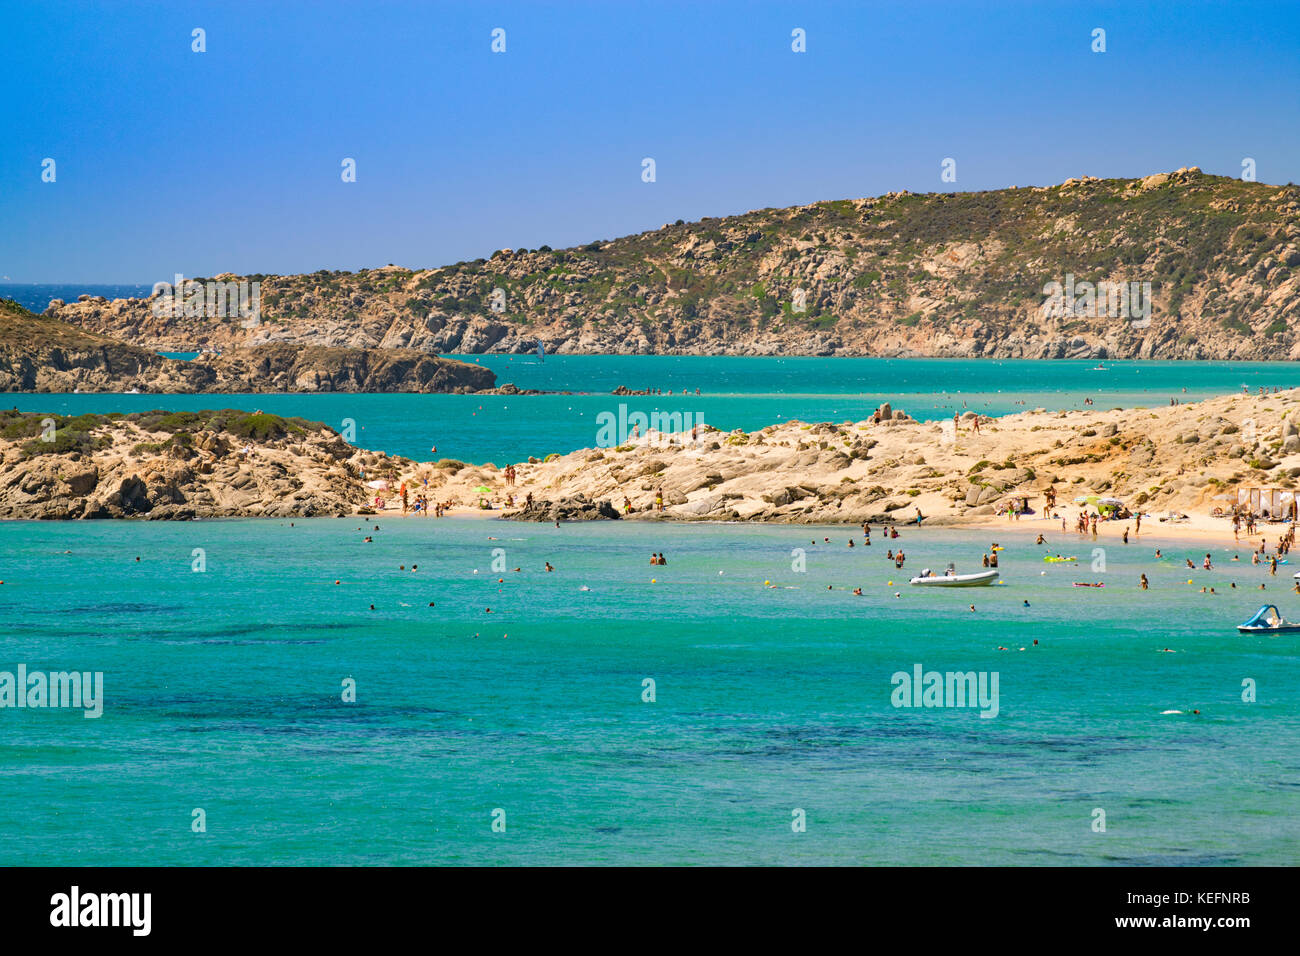 Panorama der wunderschönen Strände von Chia, Sardinien, Italien. Stockfoto